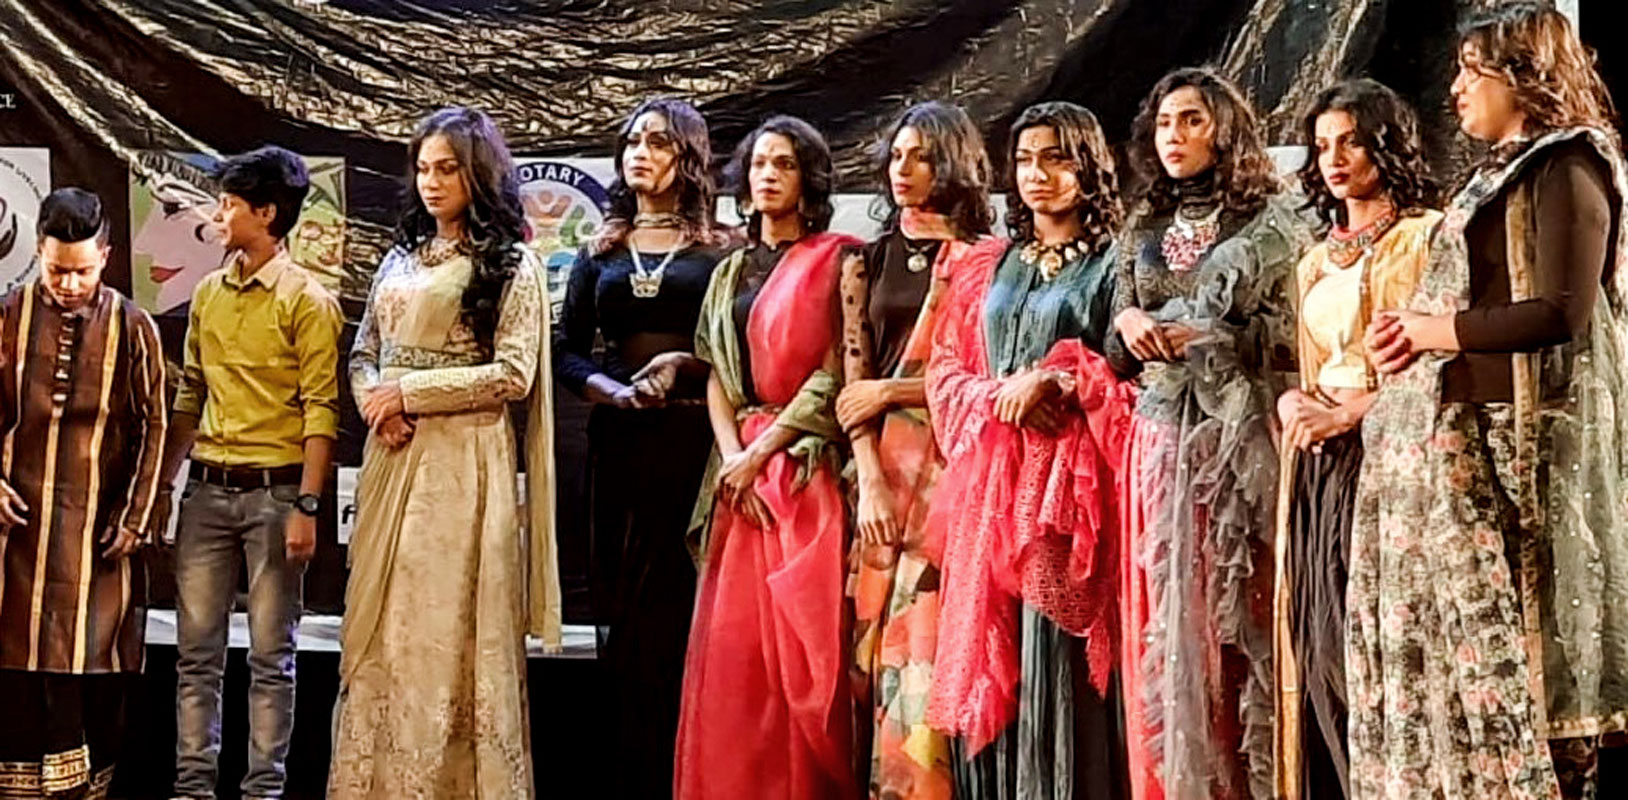 The club’s protégés Ayaan, Rayan, Debanjan and Shruti, along with transgender models.